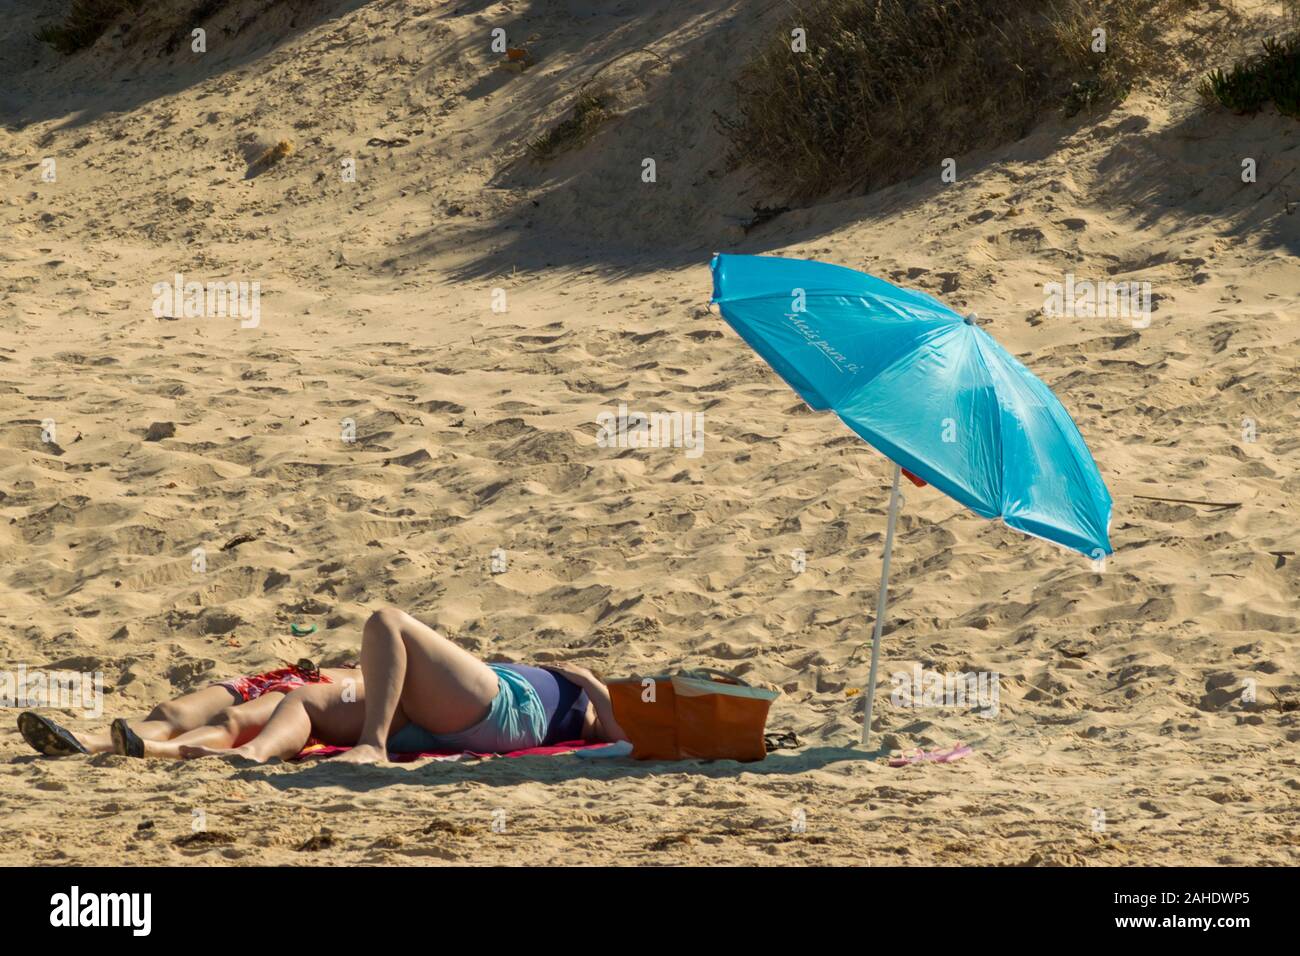 Menschen beim Sonnenbaden auf Gamboa Strand Peniche Portugal Estremadura Stockfoto